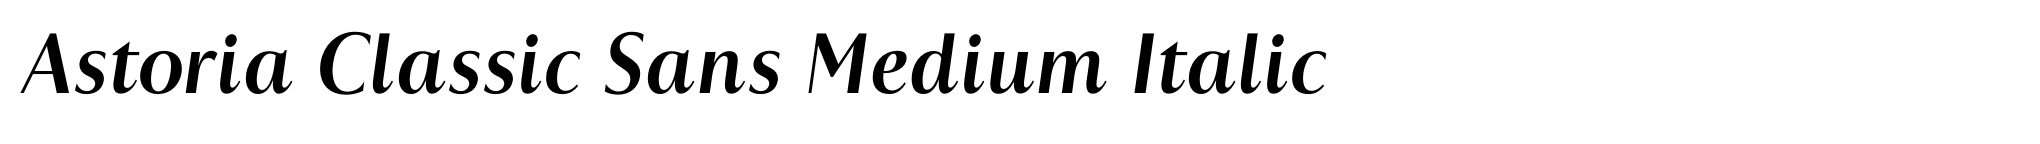 Astoria Classic Sans Medium Italic image